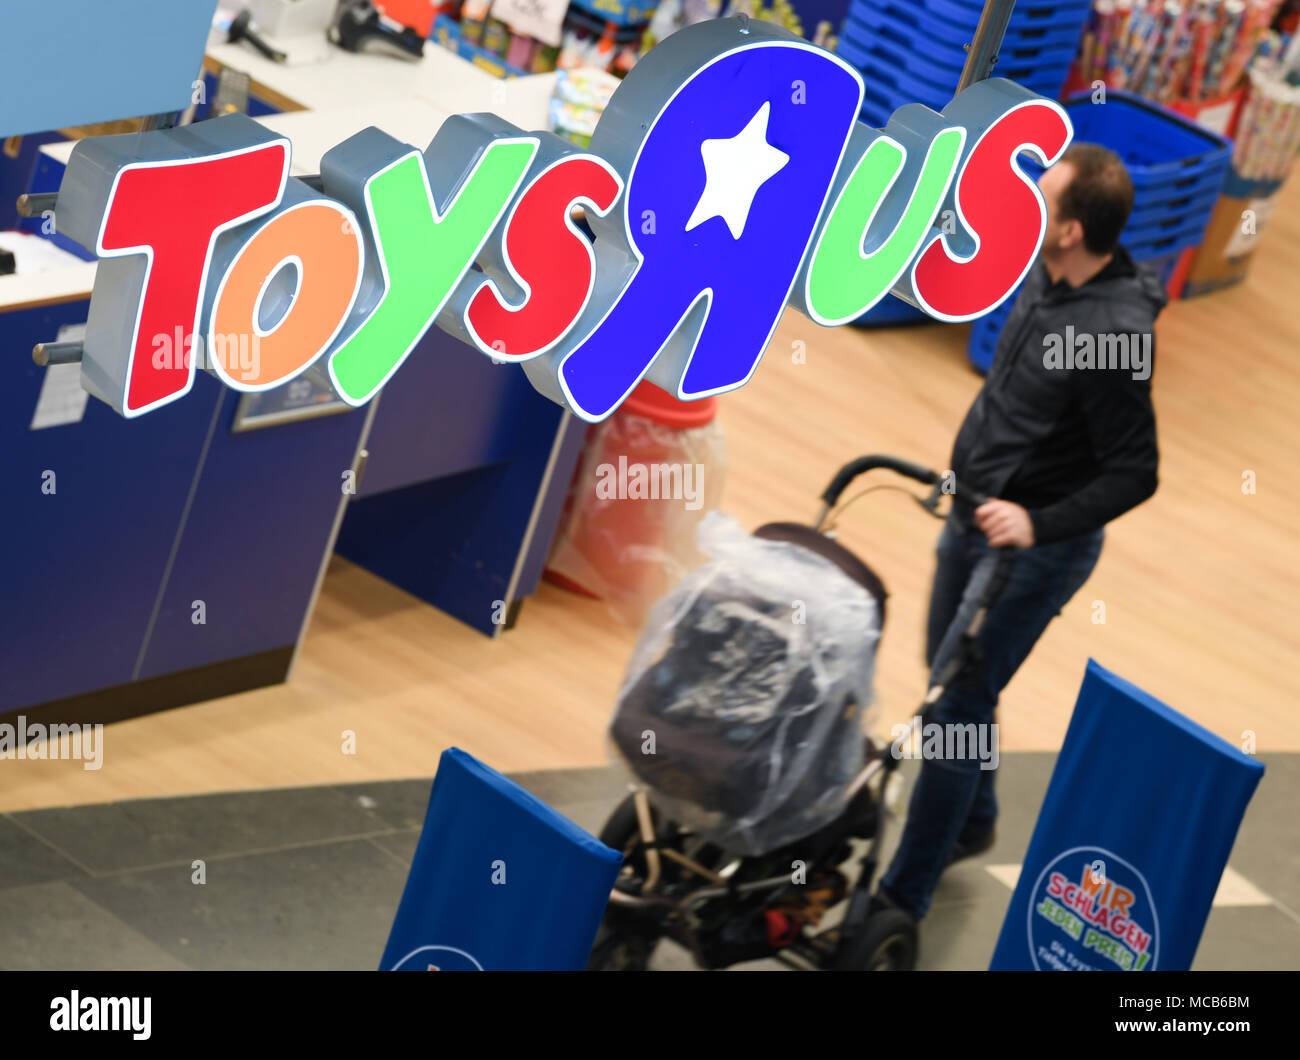 13 aprile 2018, Germania, Wiesbaden: "Toys R Us' può essere letto in corrispondenza di un ramo del fallimento US-American toy company. Foto: Arne Dedert/dpa Foto Stock